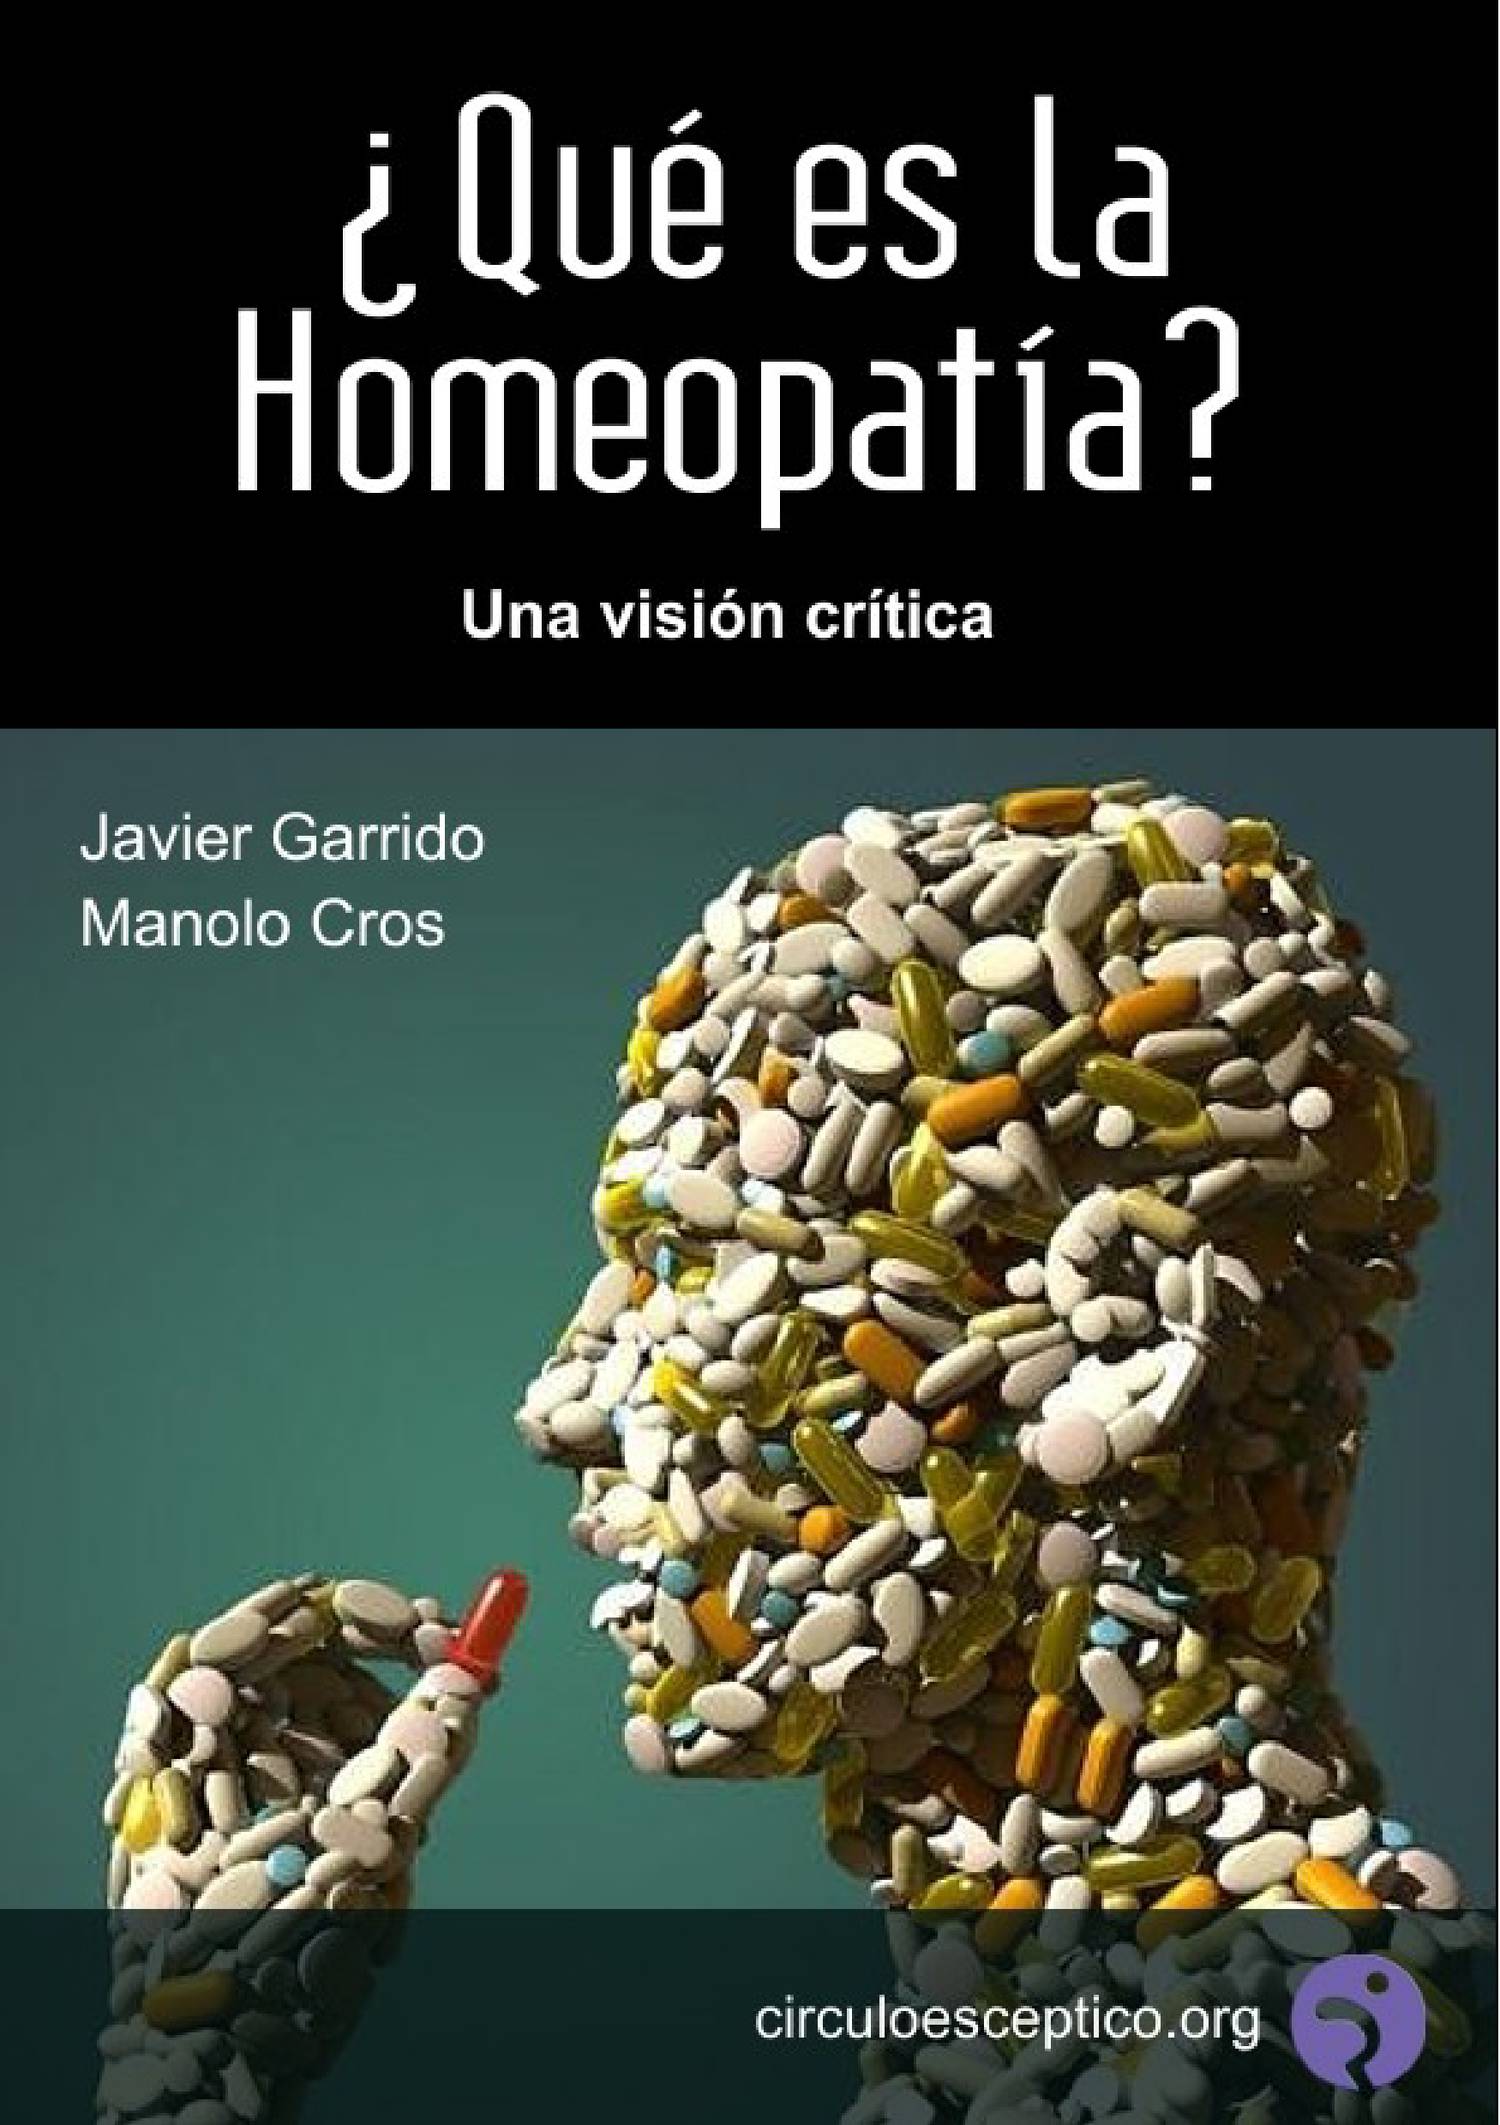 Qué es la homeopatía.pdf  DocDroid